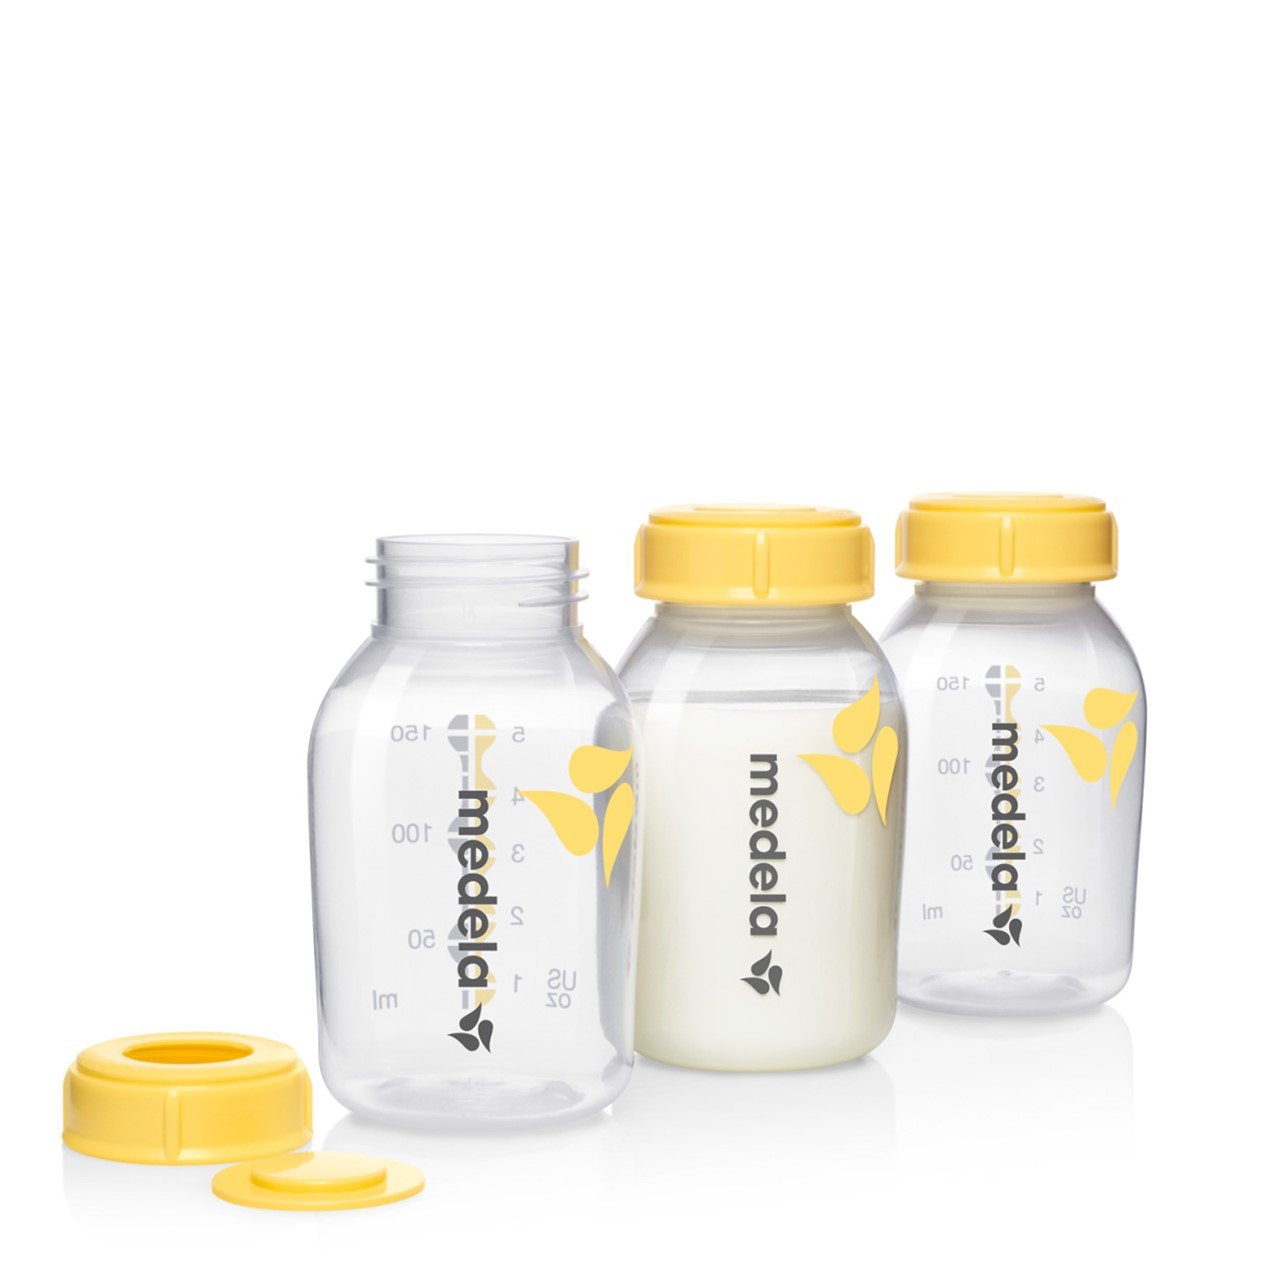 https://static.beautytocare.com/media/catalog/product/m/e/medela-breast-milk-bottles-150ml-x3.jpg